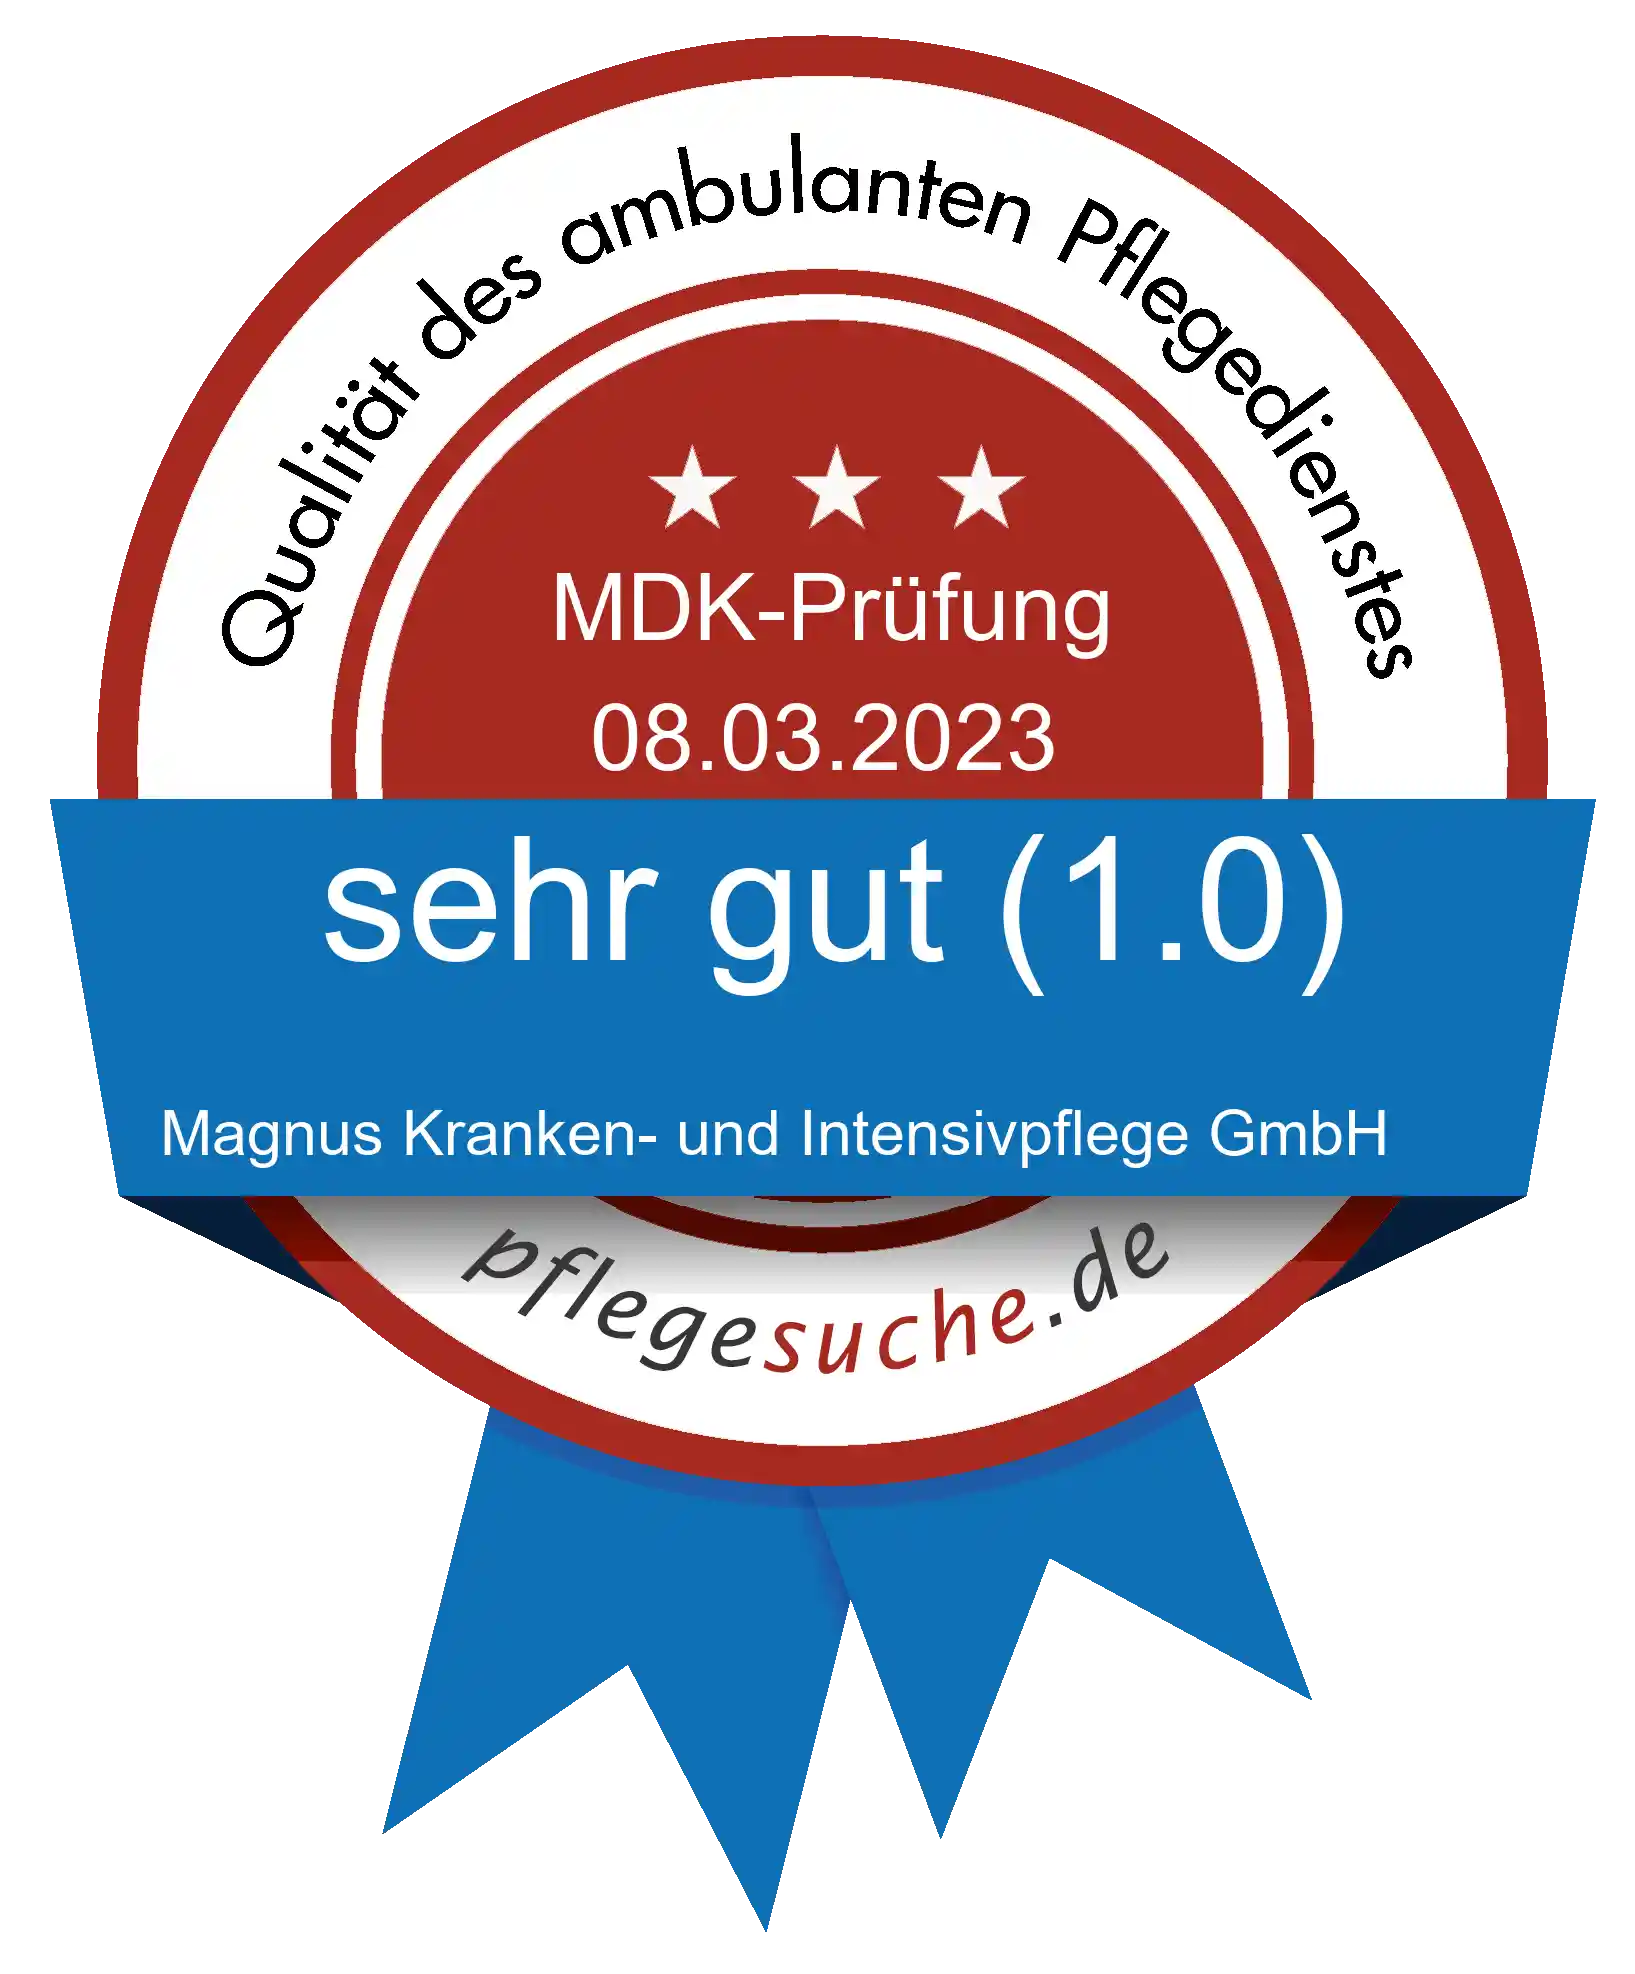 Siegel Benotung: Magnus Kranken- und Intensivpflege GmbH